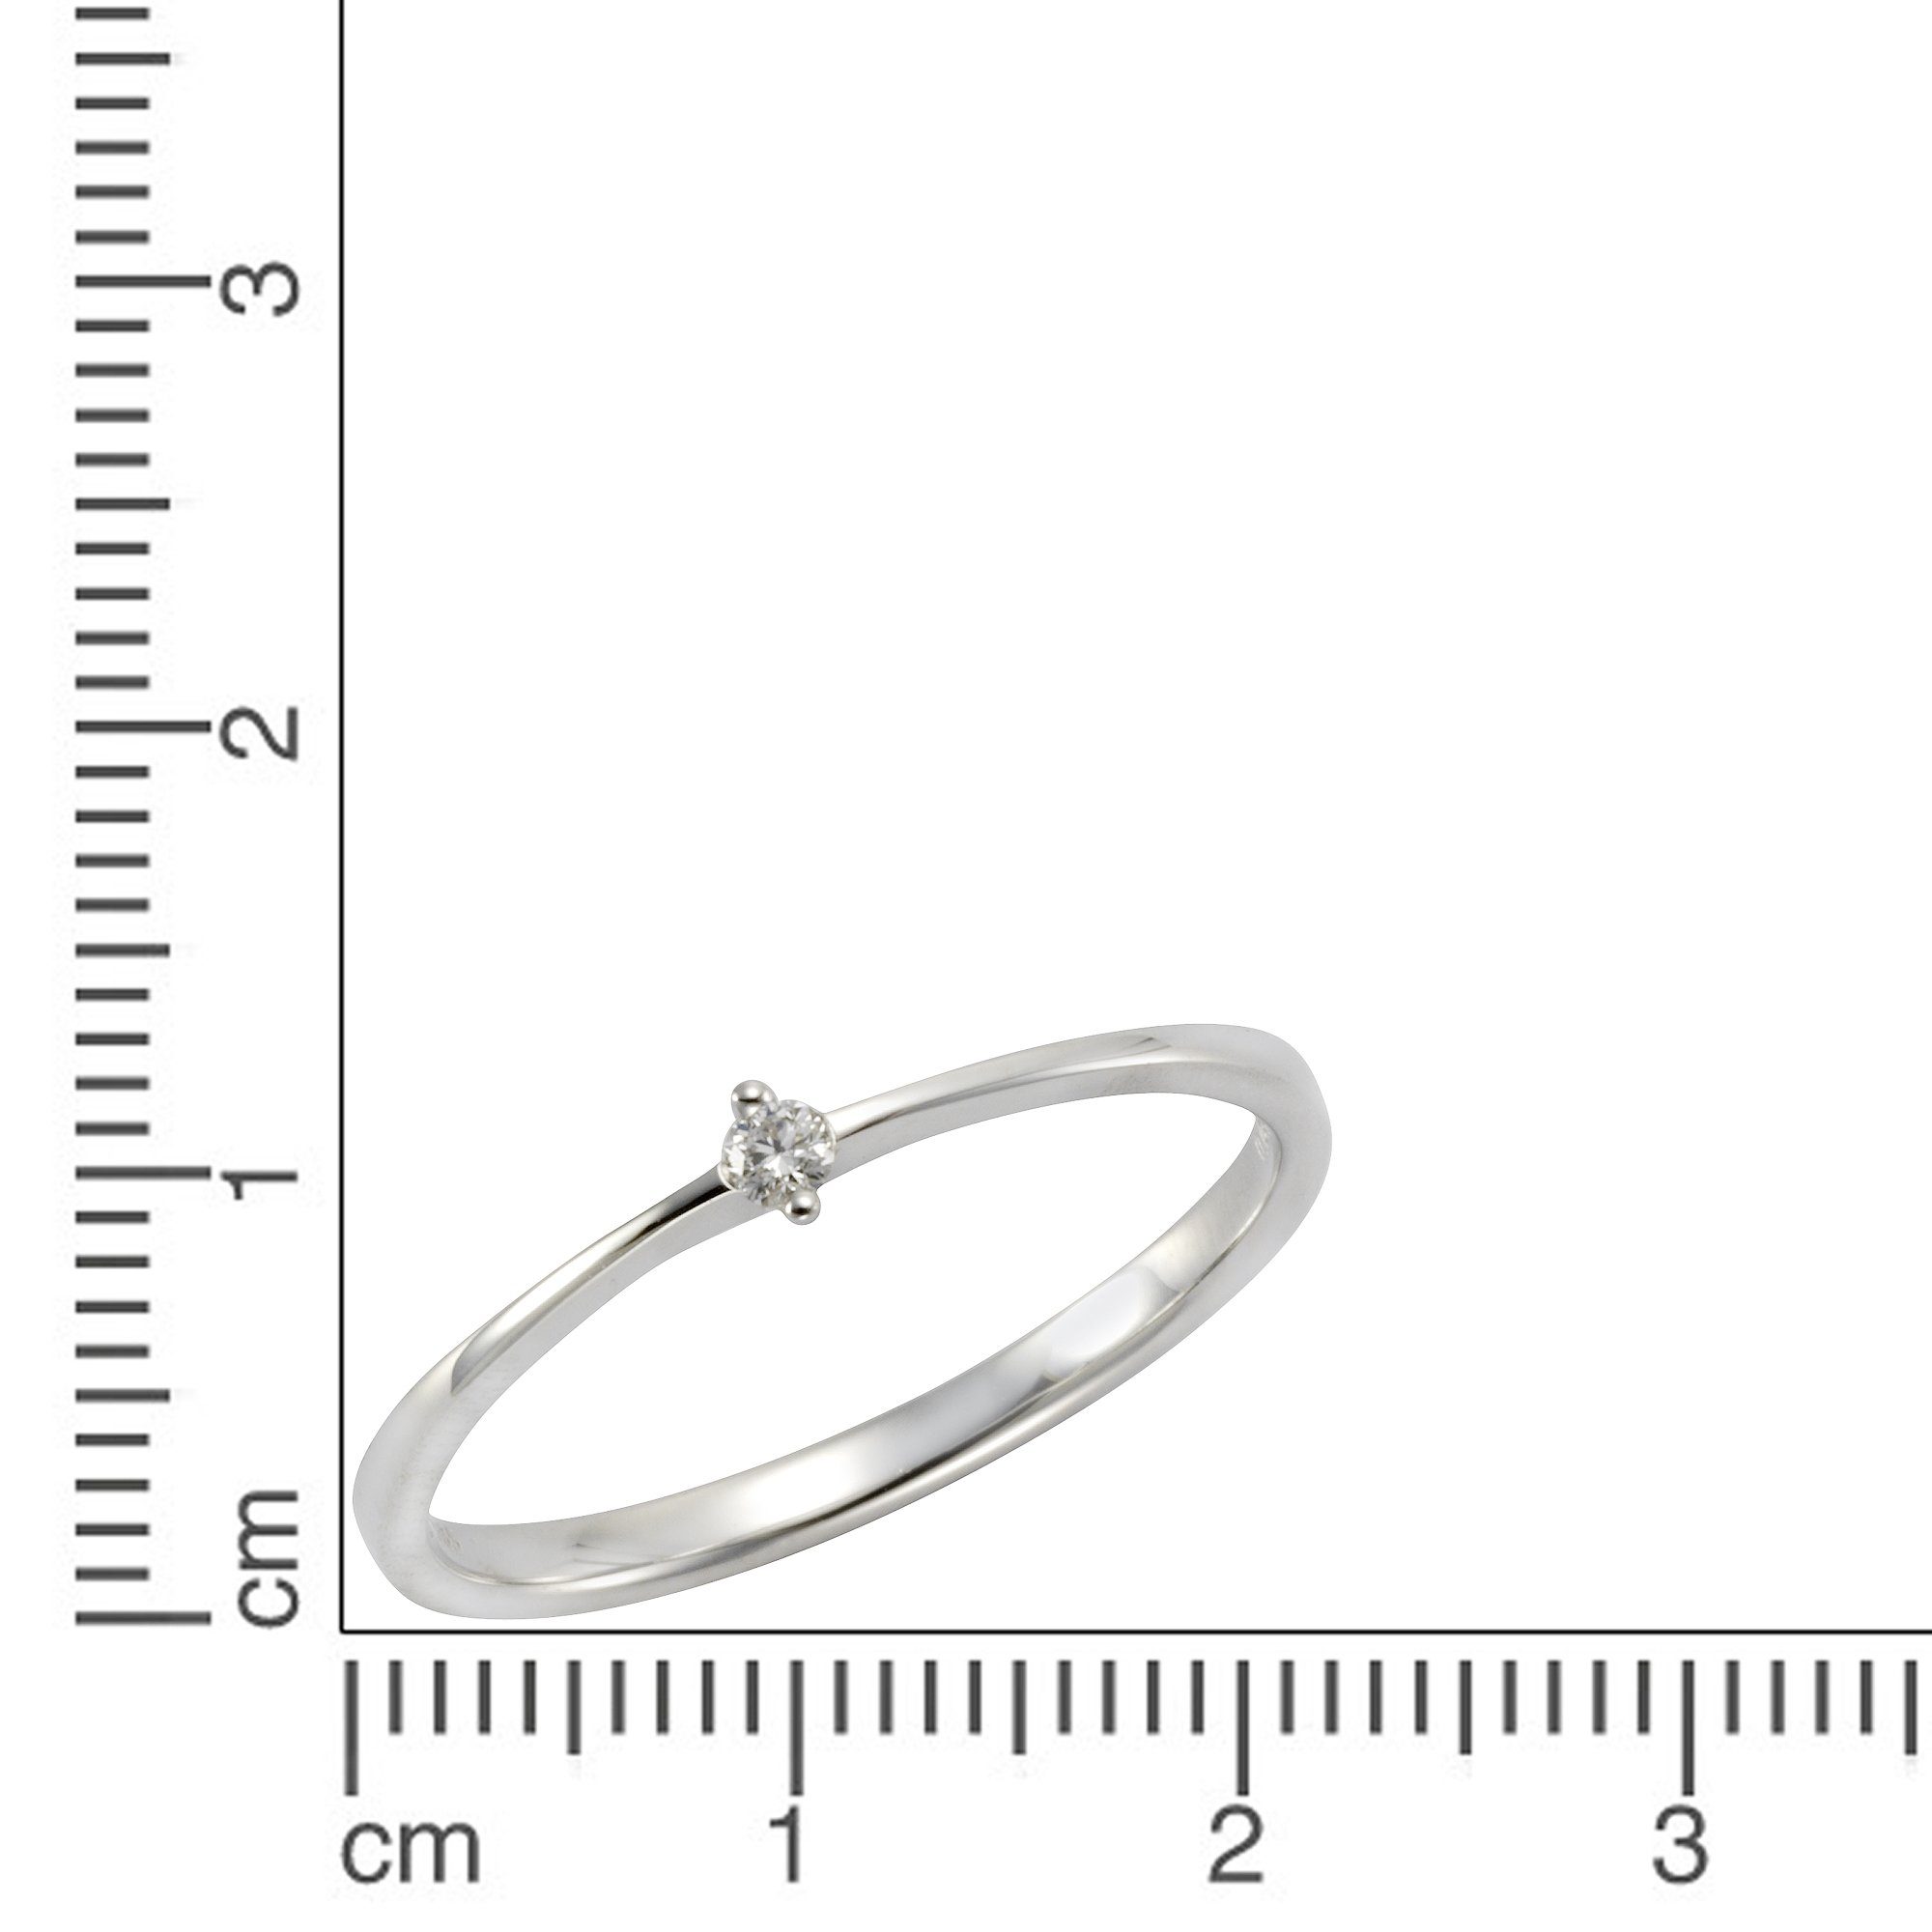 Orolino Fingerring 585 Weißgold Brillant 0,04ct., Das ideale Geschenk für  die Frau oder Freundin